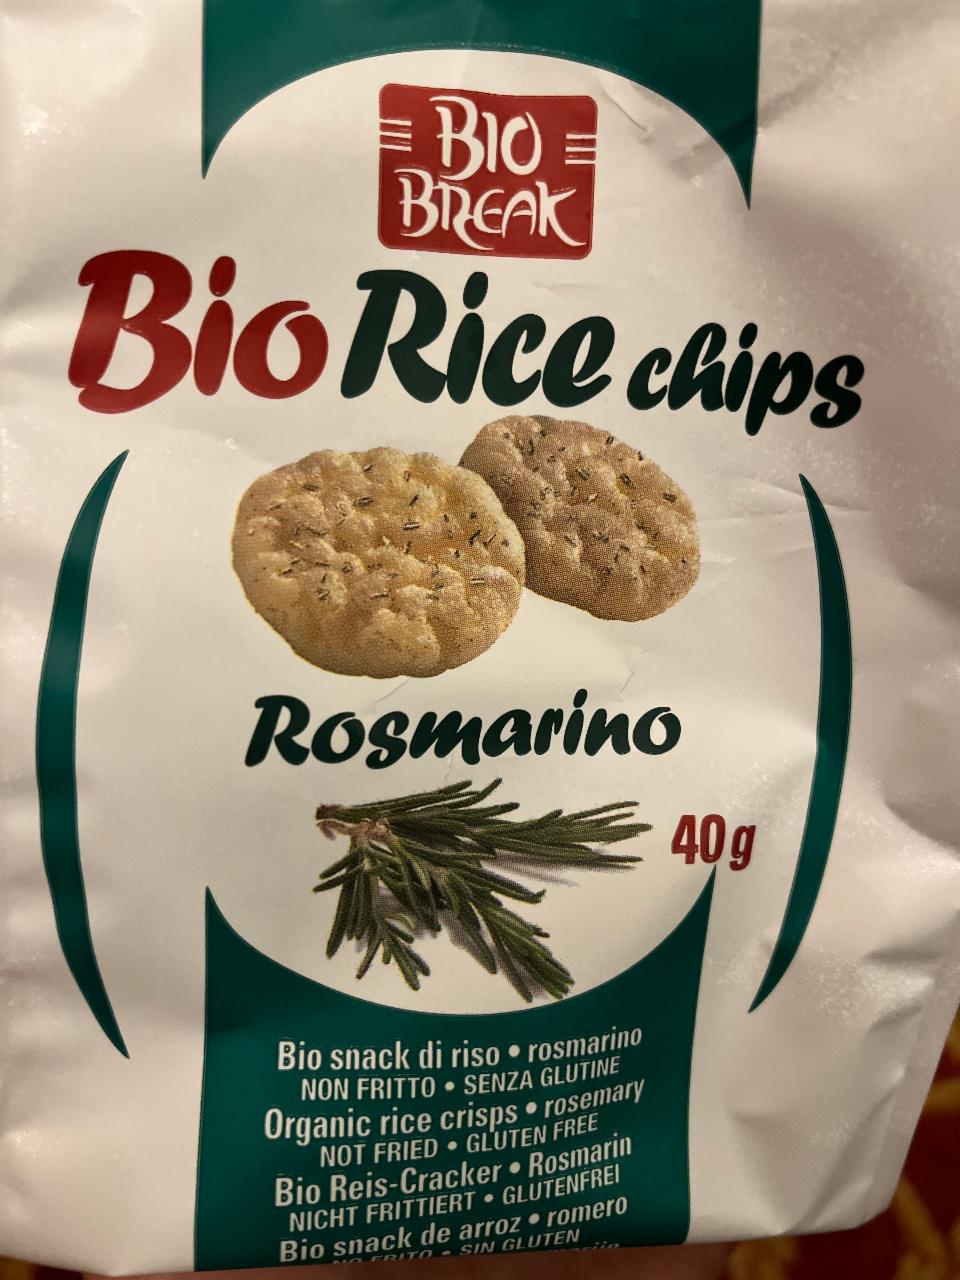 Fotografie - Bio Rice chips Rosmarino Bio Break